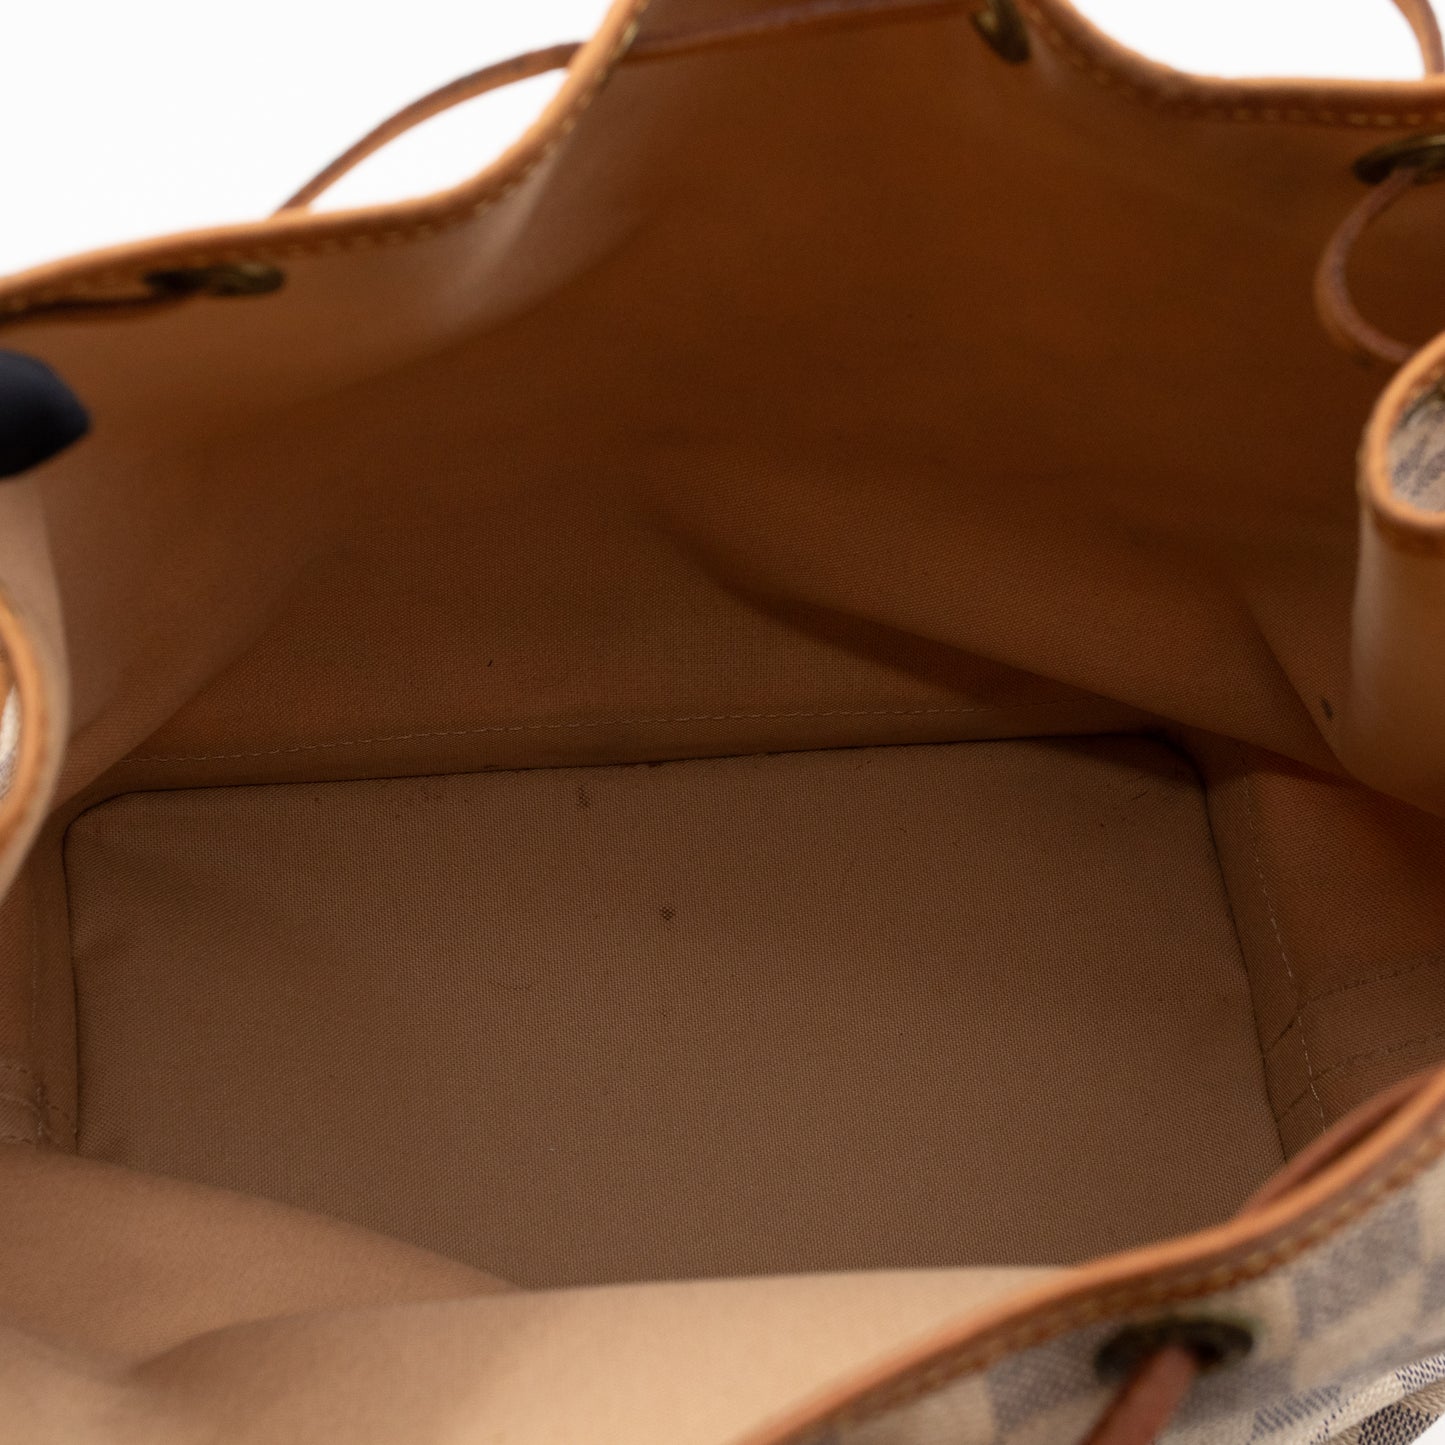 Authentic Louis Vuitton Damier Azur Noe BB Messenger Bag – Paris Station  Shop